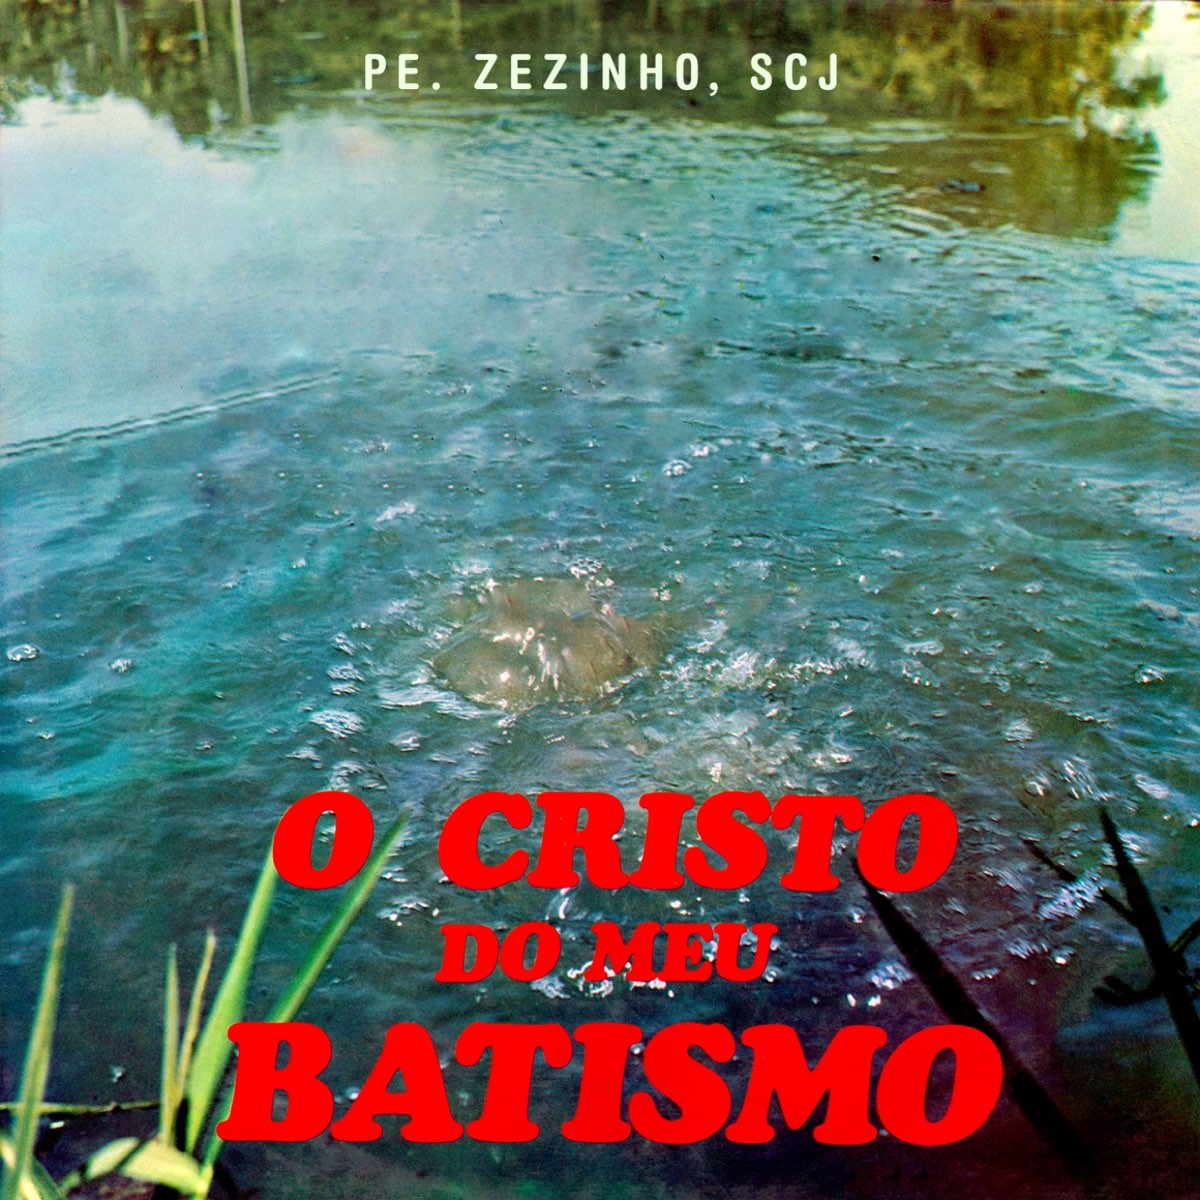 O Cristo do Meu Batismo - EP của Padre Zezinho scj trên Apple Music